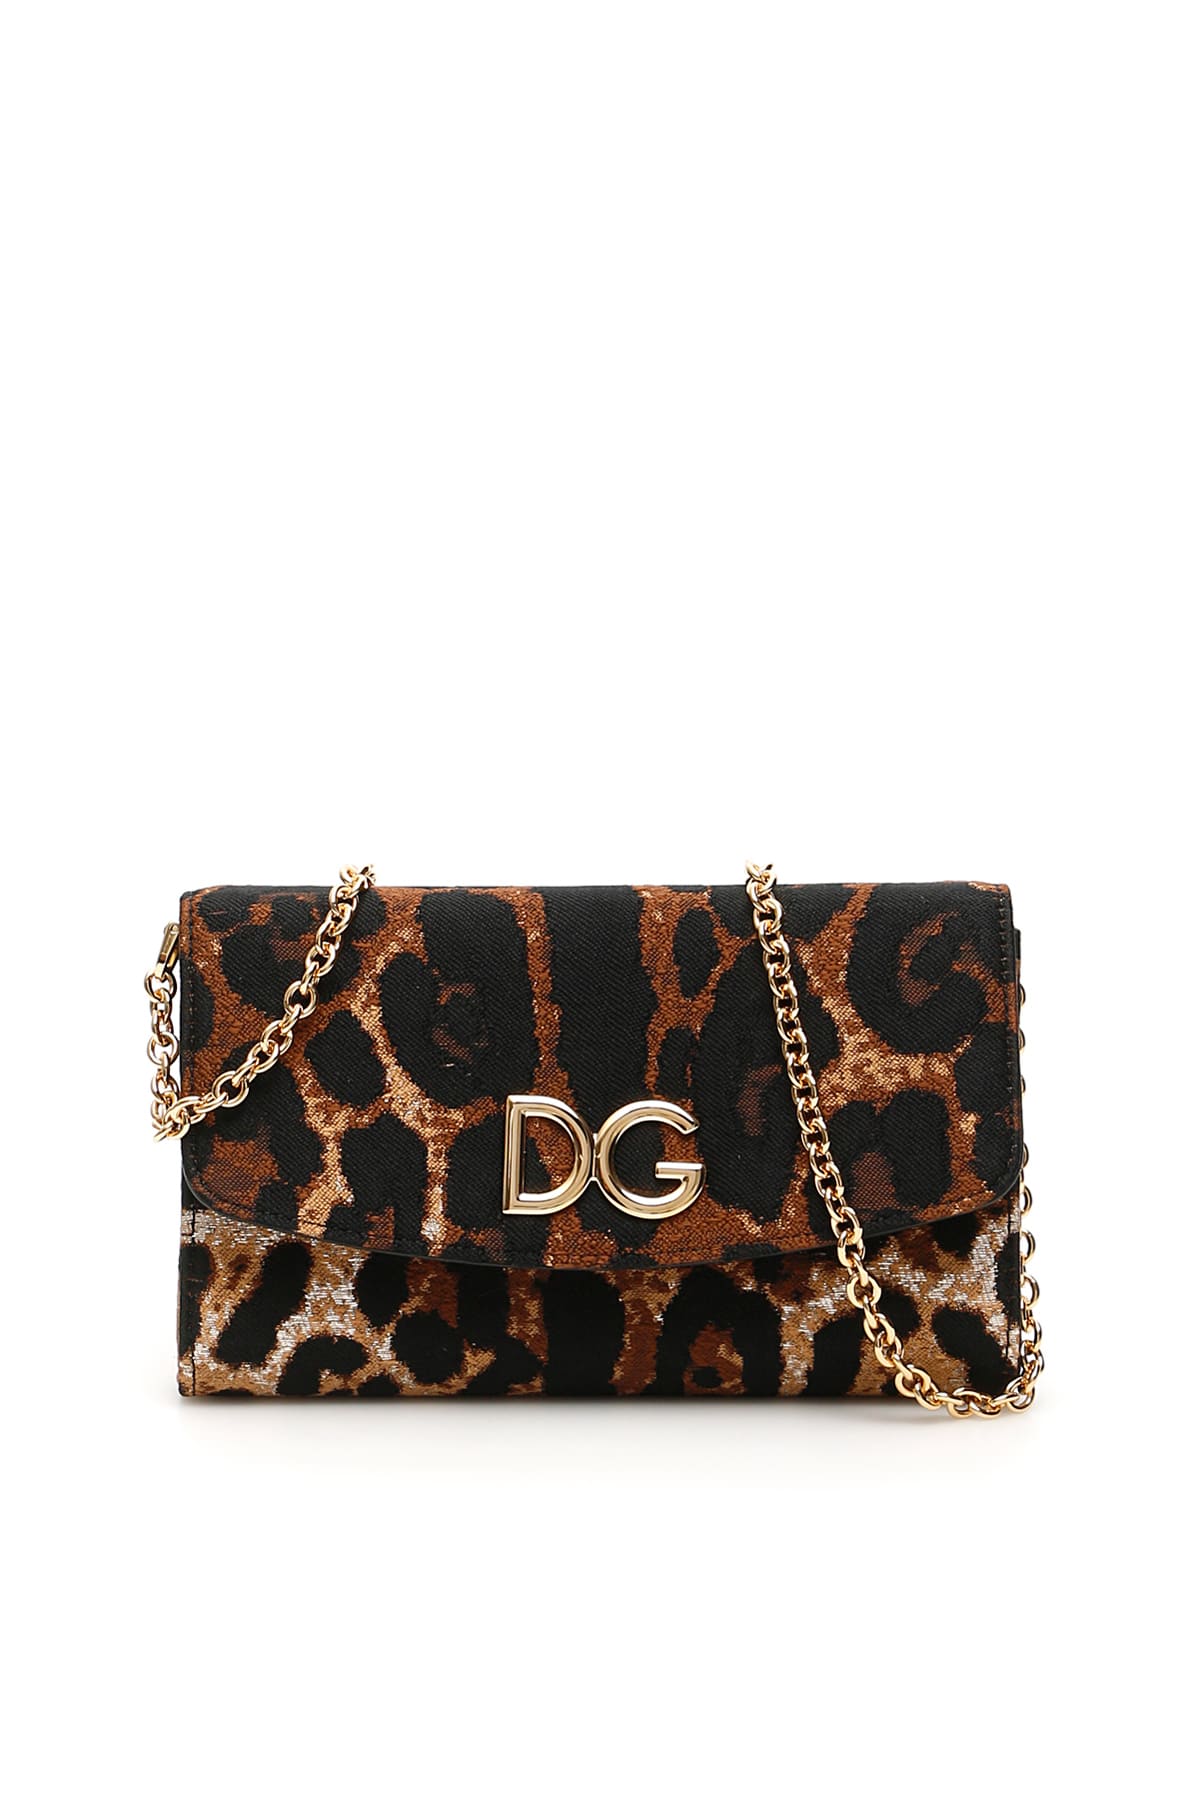 Dolce & Gabbana Dg Bag